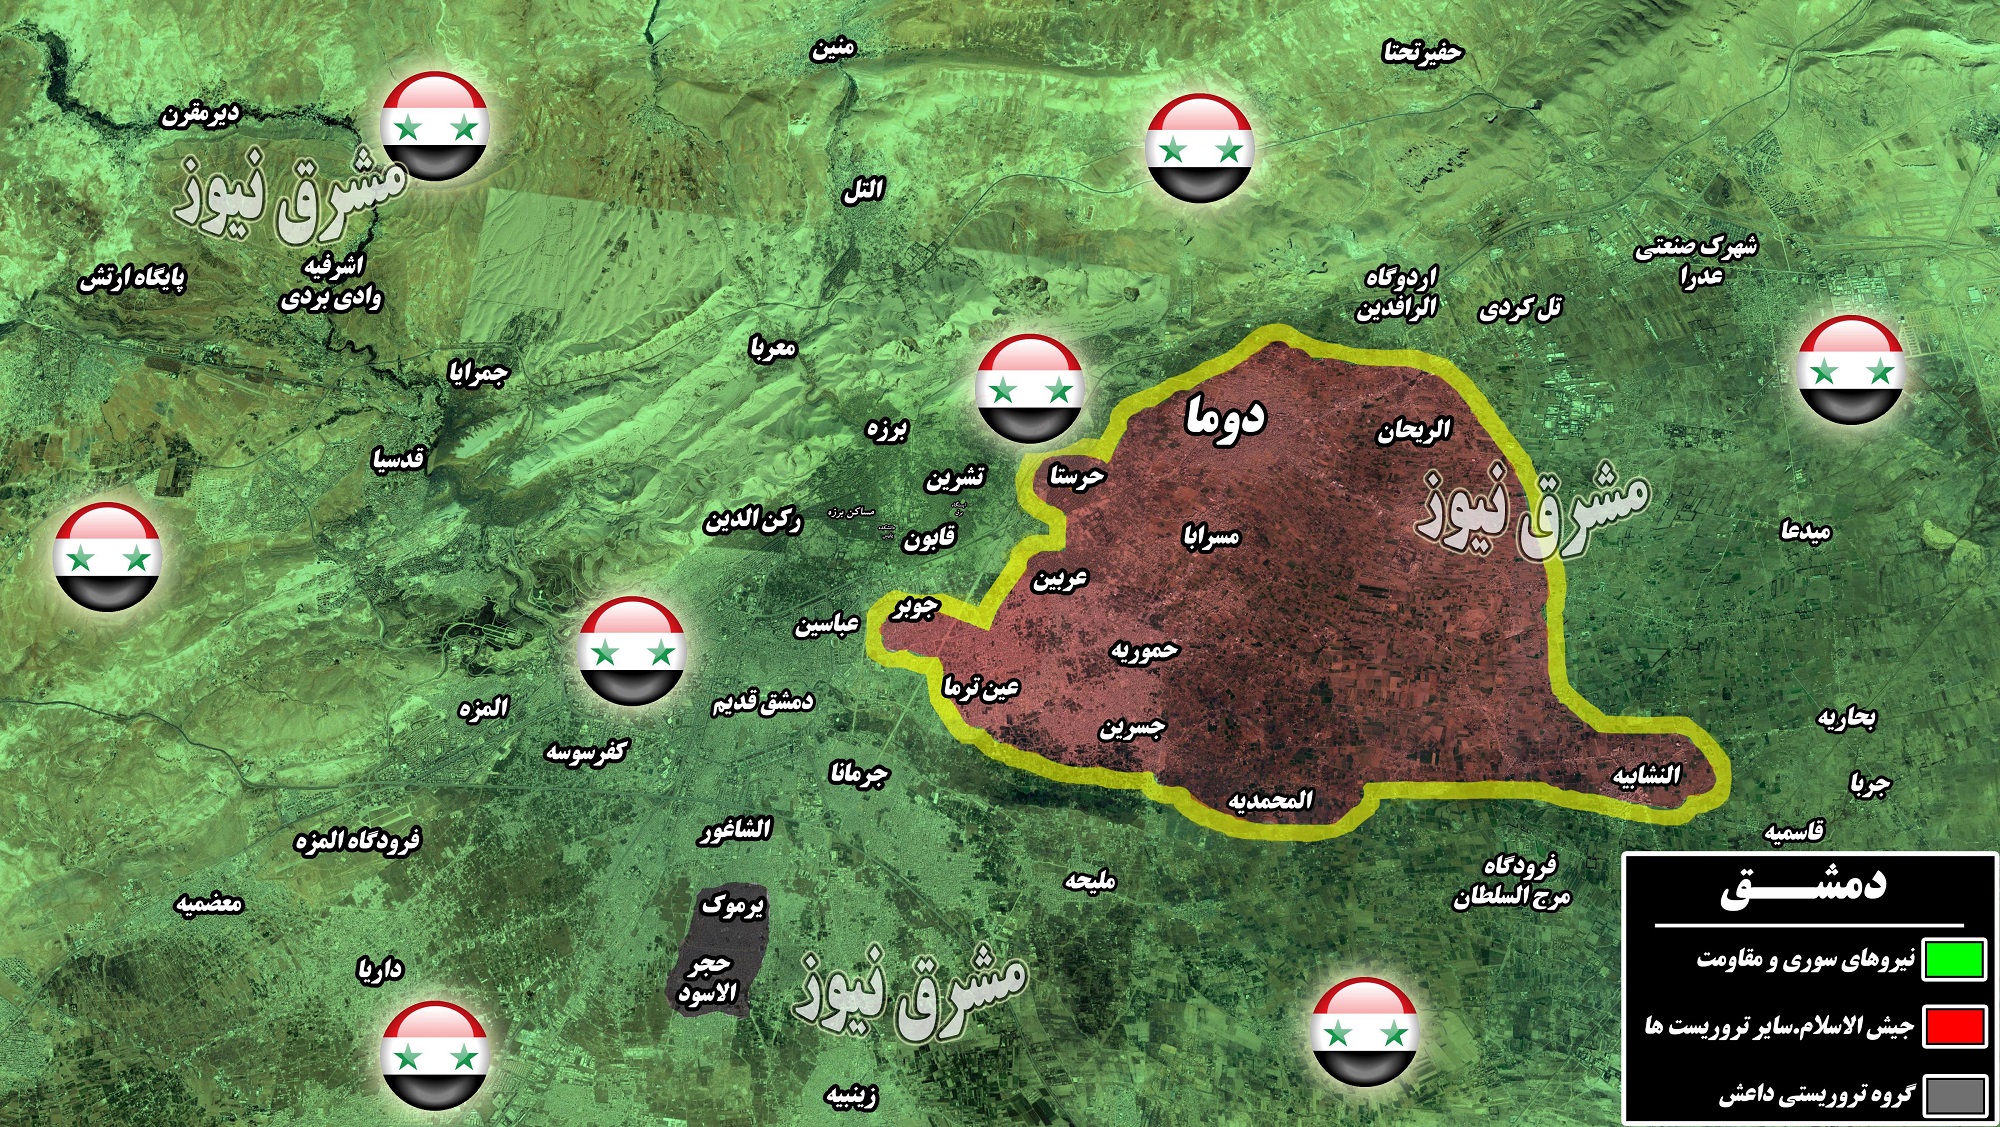 کمربند سبز دمشق از آبادی تا ویرانی؛ کدام گروه‌های تروریستی در غوطه شرقی دمشق حضور دارند؟ +عکس و نقشه میدانی